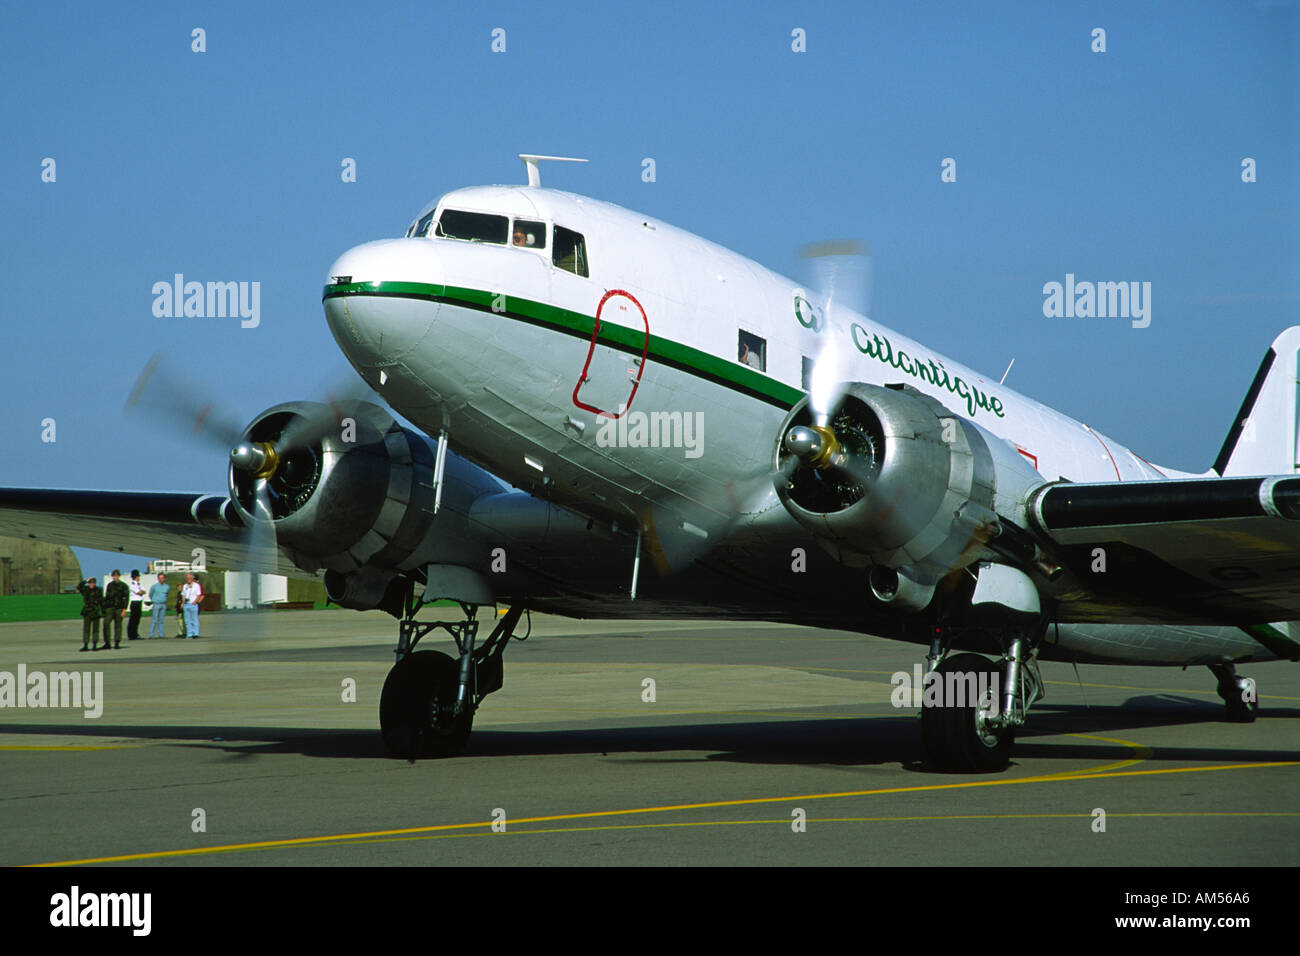 Douglas DC 3 Dakota aircraft taxiing to take off Stock Photo